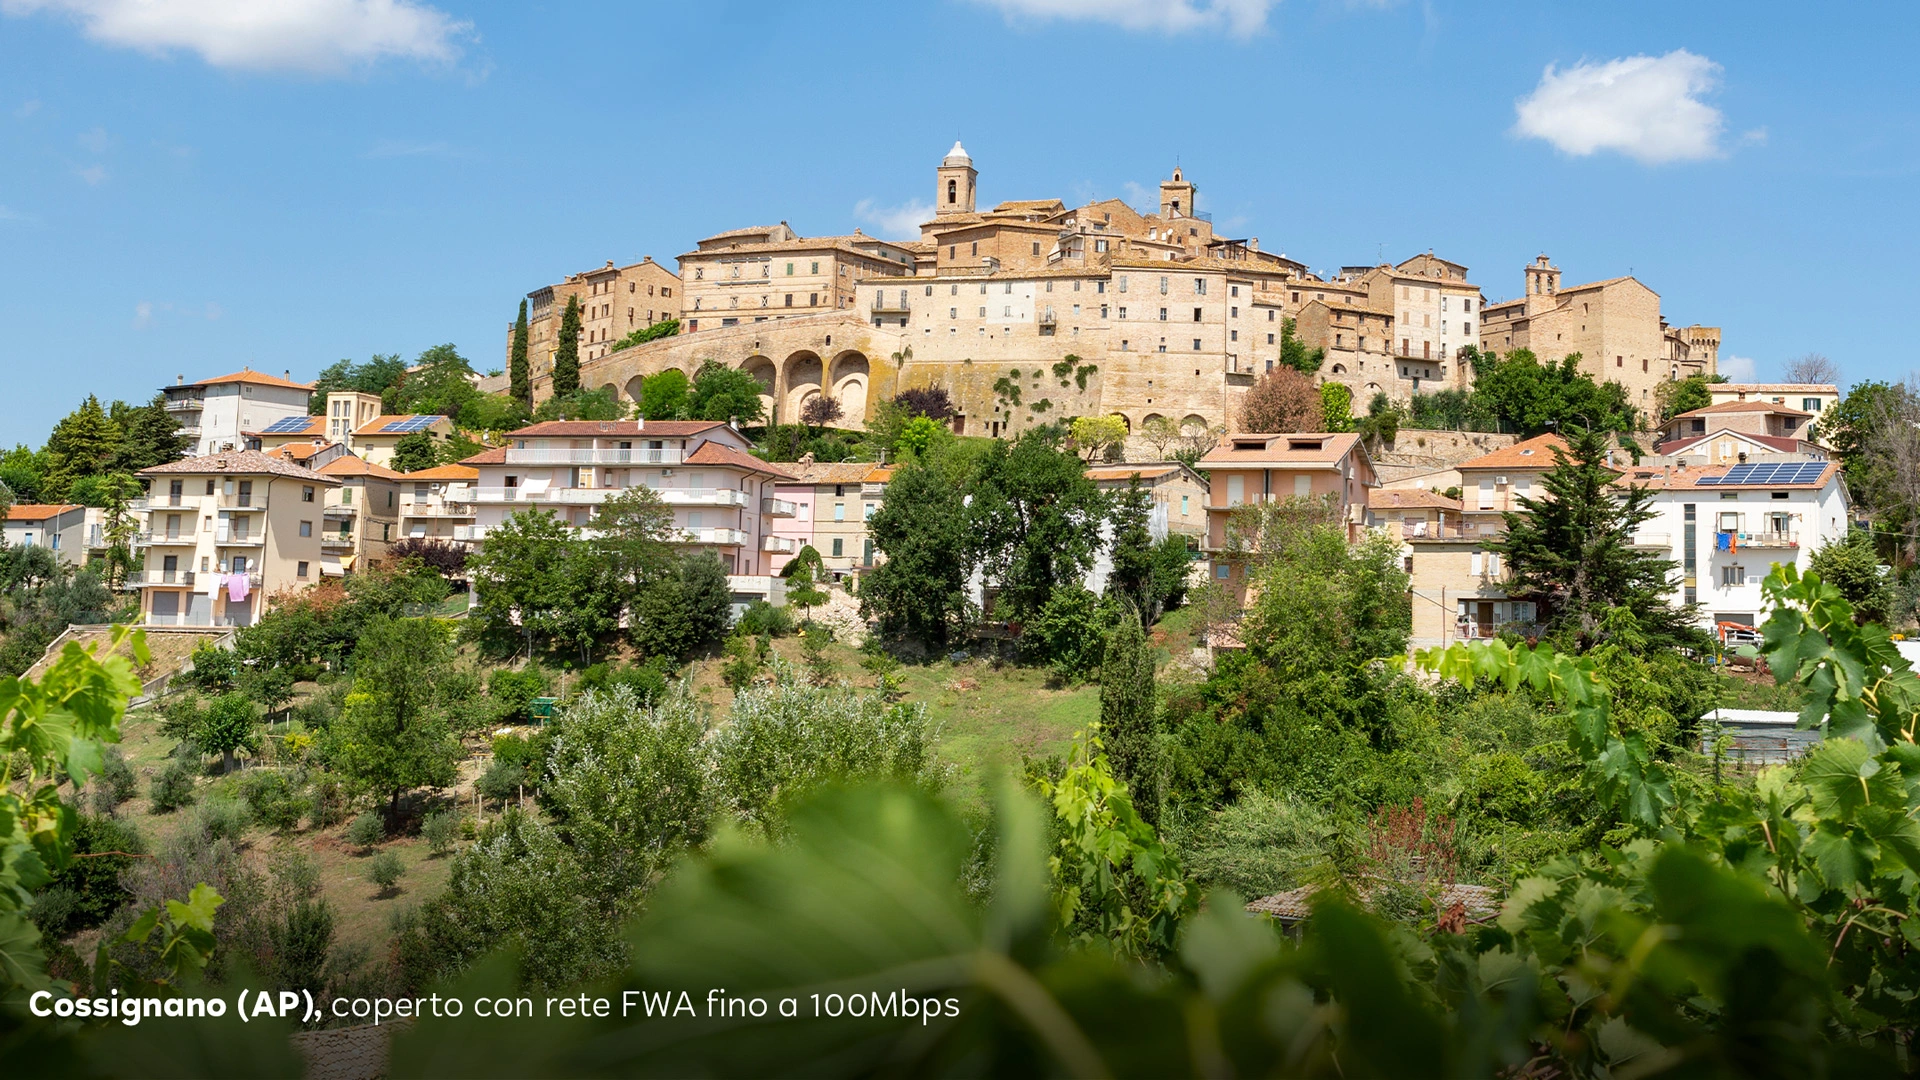 La provincia di Ascoli Piceno coperta da connessione FWA sempre più veloce